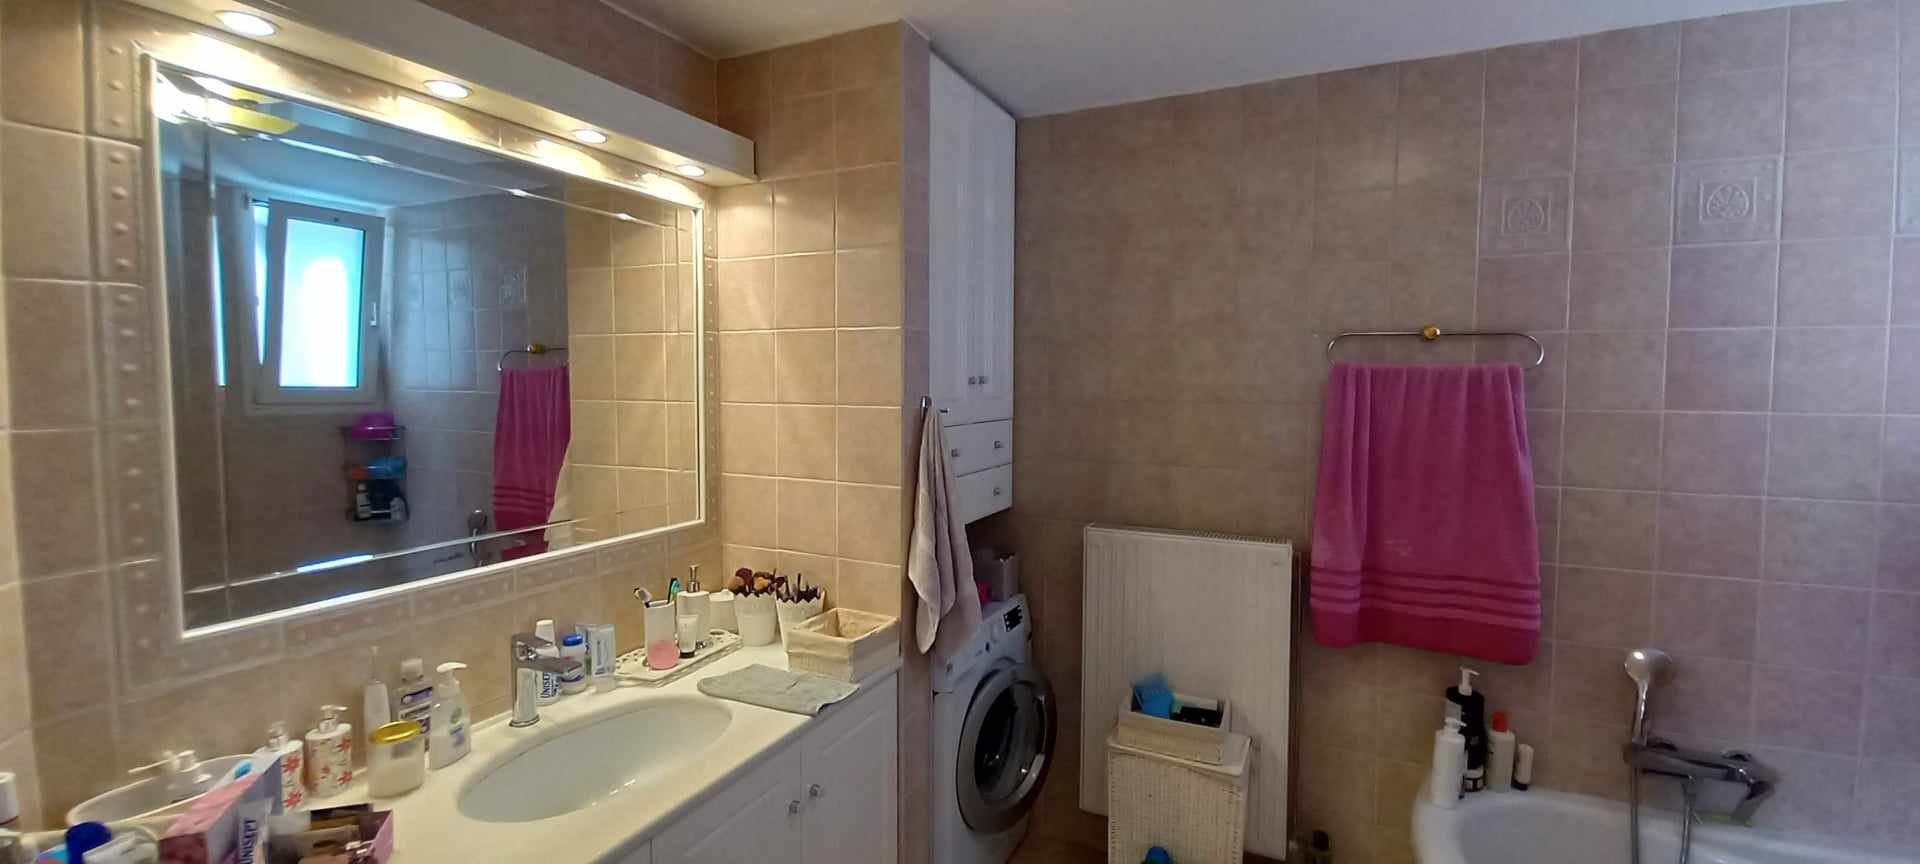 unique_spacious_modern_home_bathroom_mirror.jpg